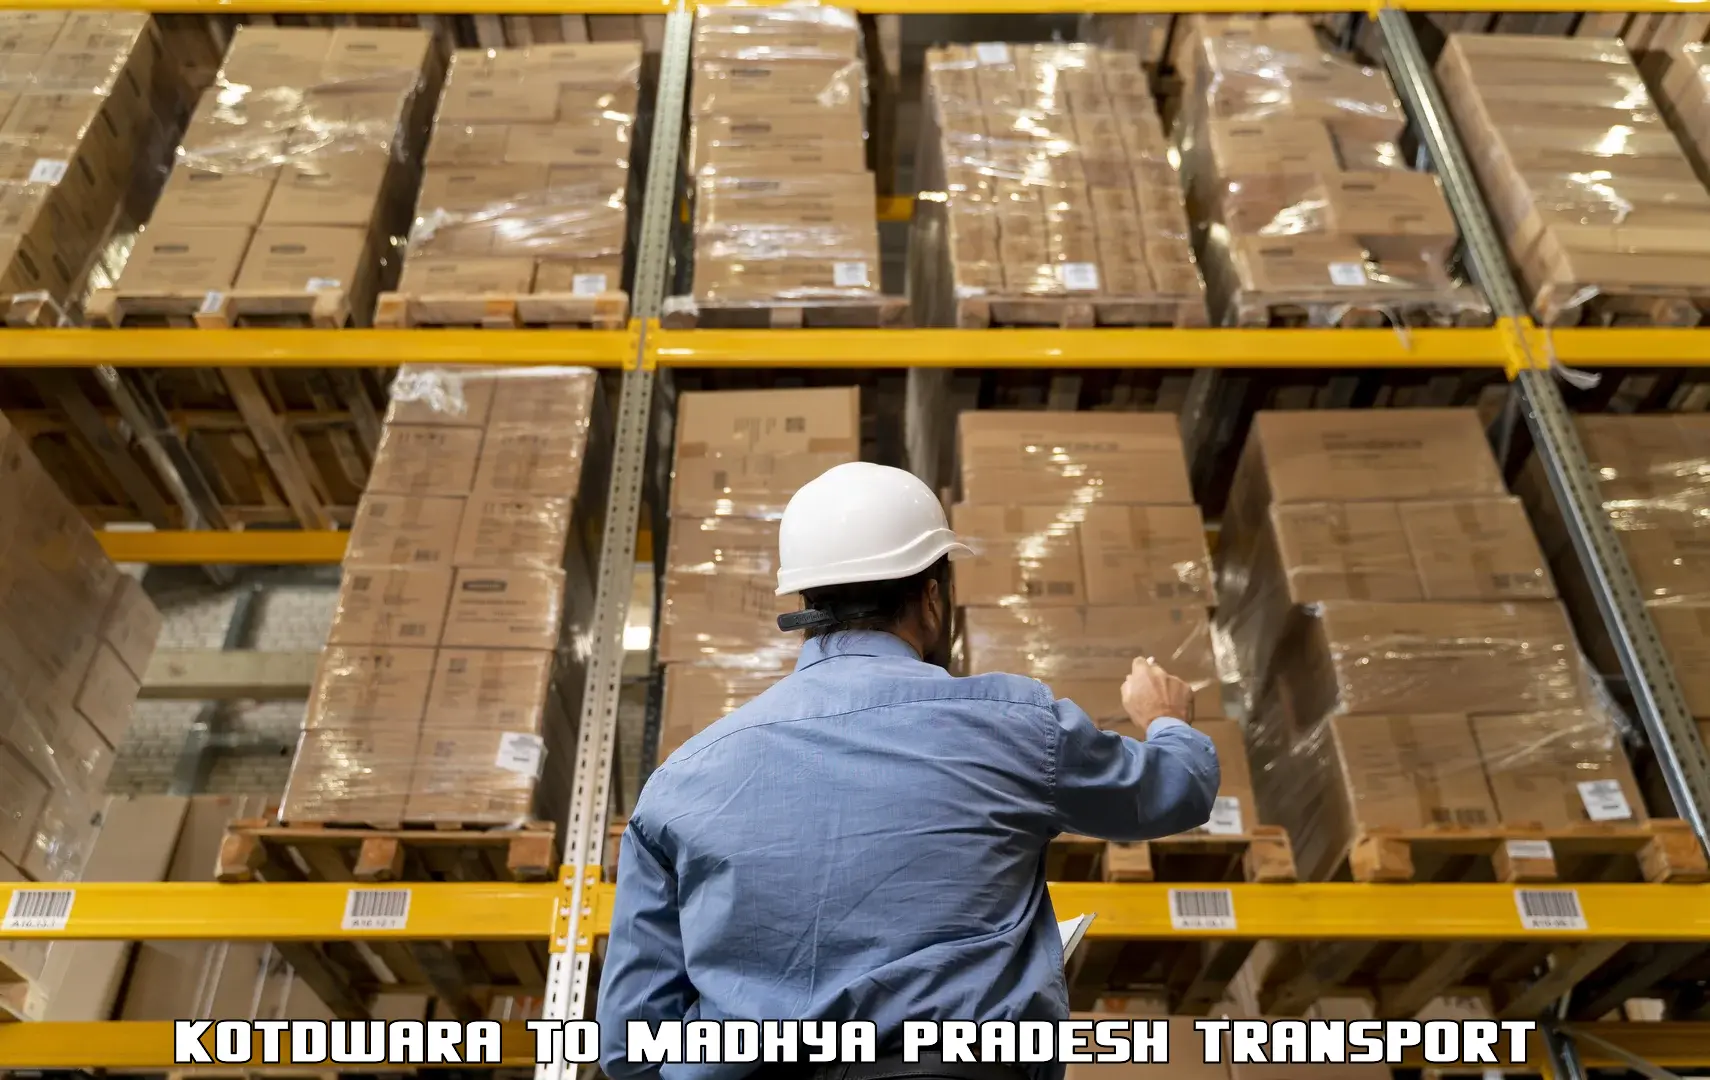 Cargo transportation services Kotdwara to Dhar